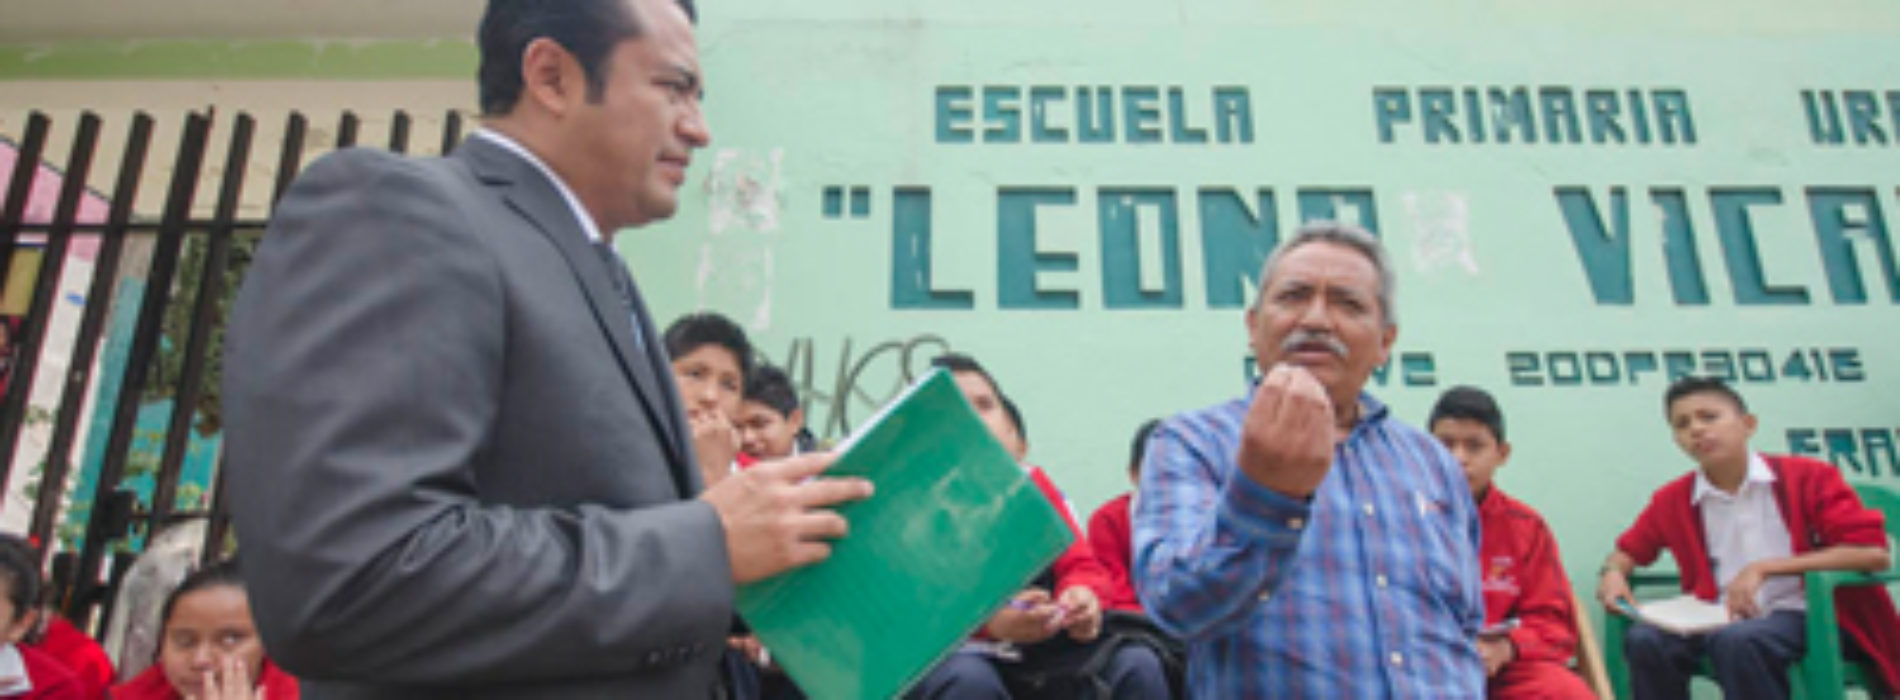 Abiertas el 88% de las escuelas del nivel básico de Oaxaca, con asistencia escolar normal: IEEPO